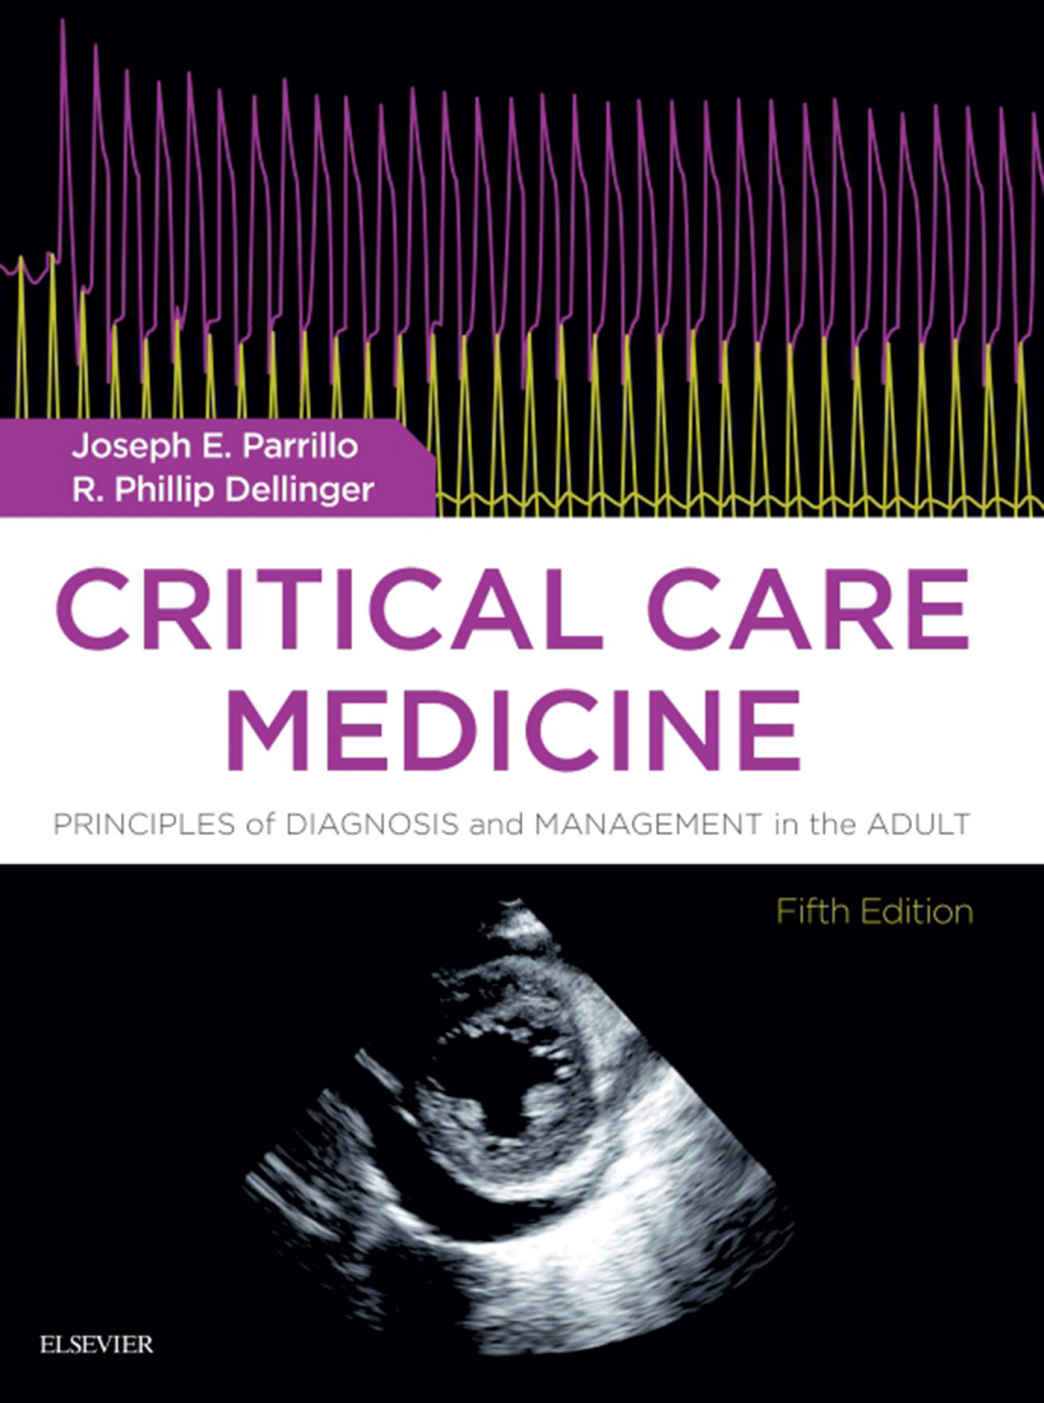 Critical Care Medicine, Fifth Edition by Joseph E. Parrillo MD FCCM , R. Phillip Dellinger MD MS 